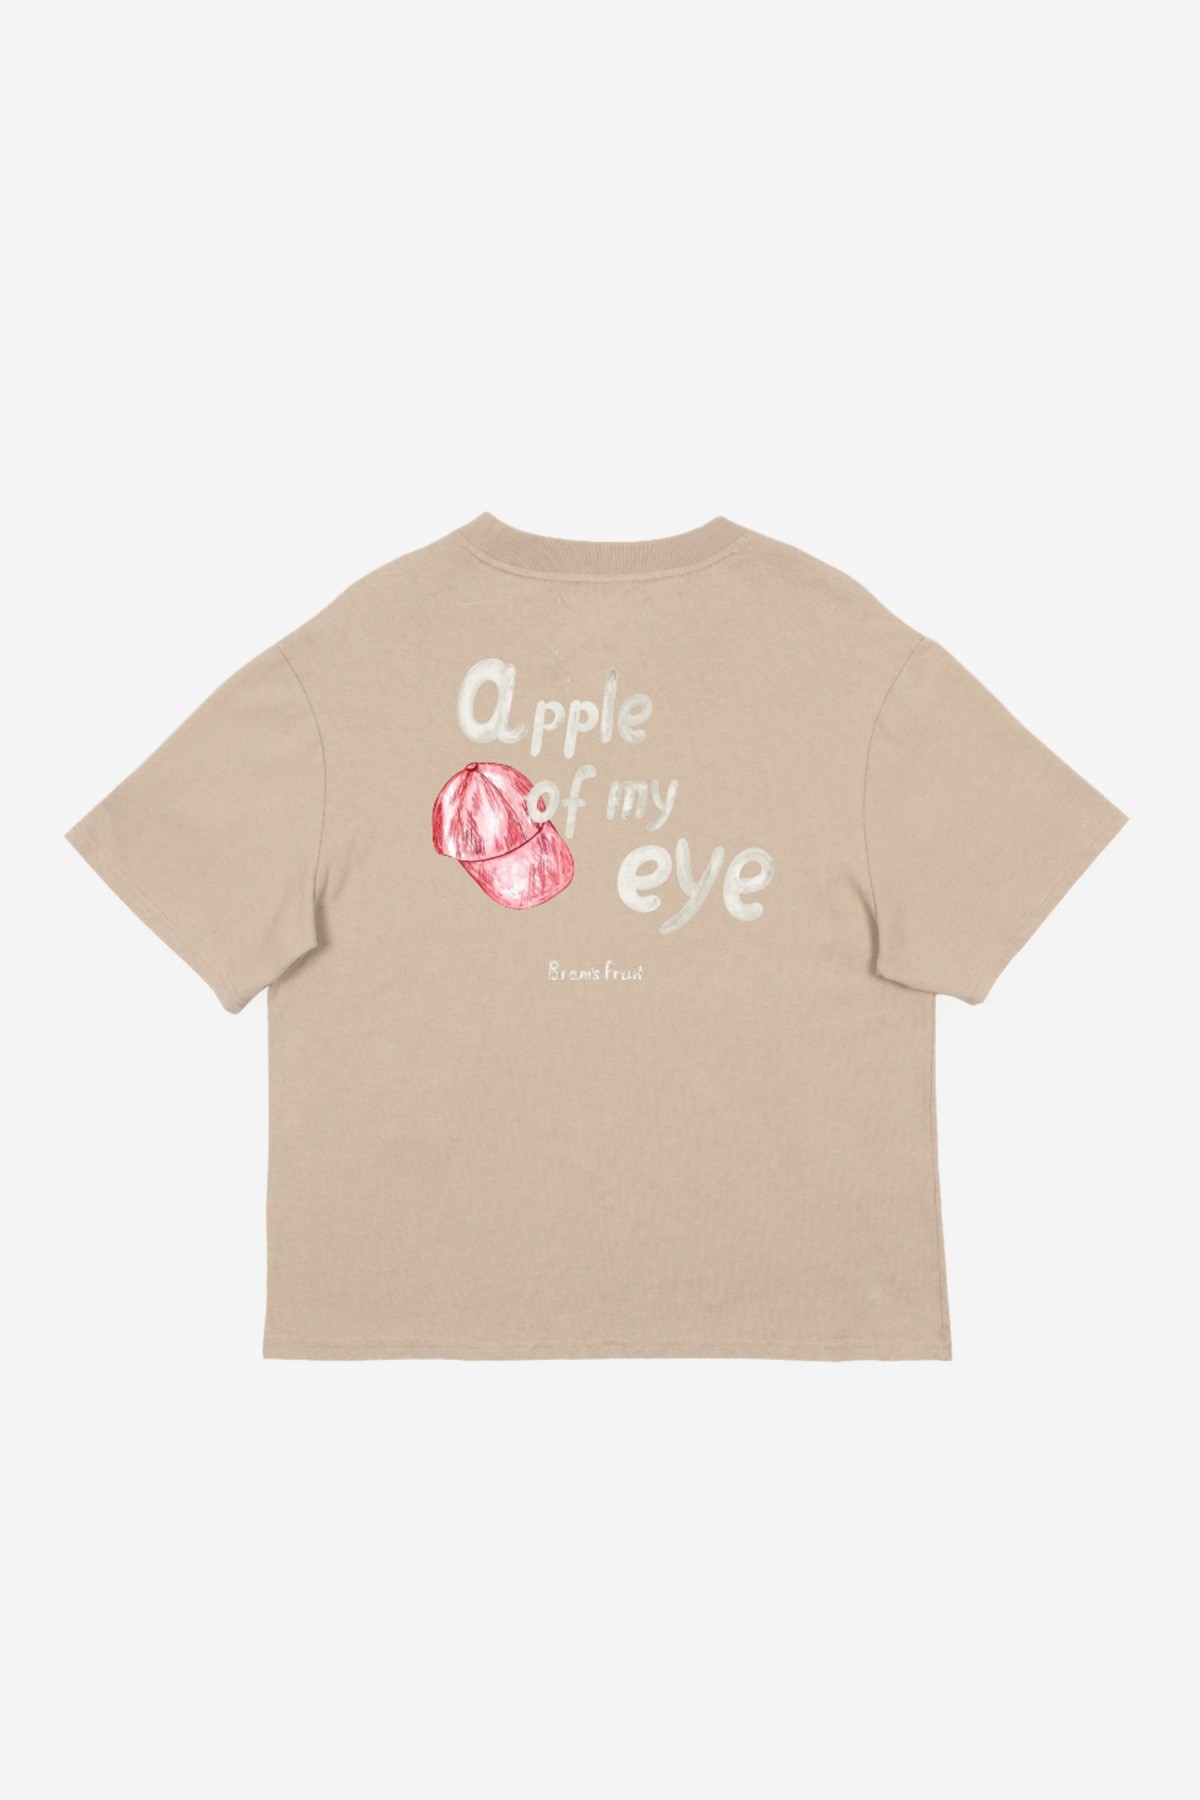 Bram's Fruit Apple Of My Eye T-Shirt in Khaki